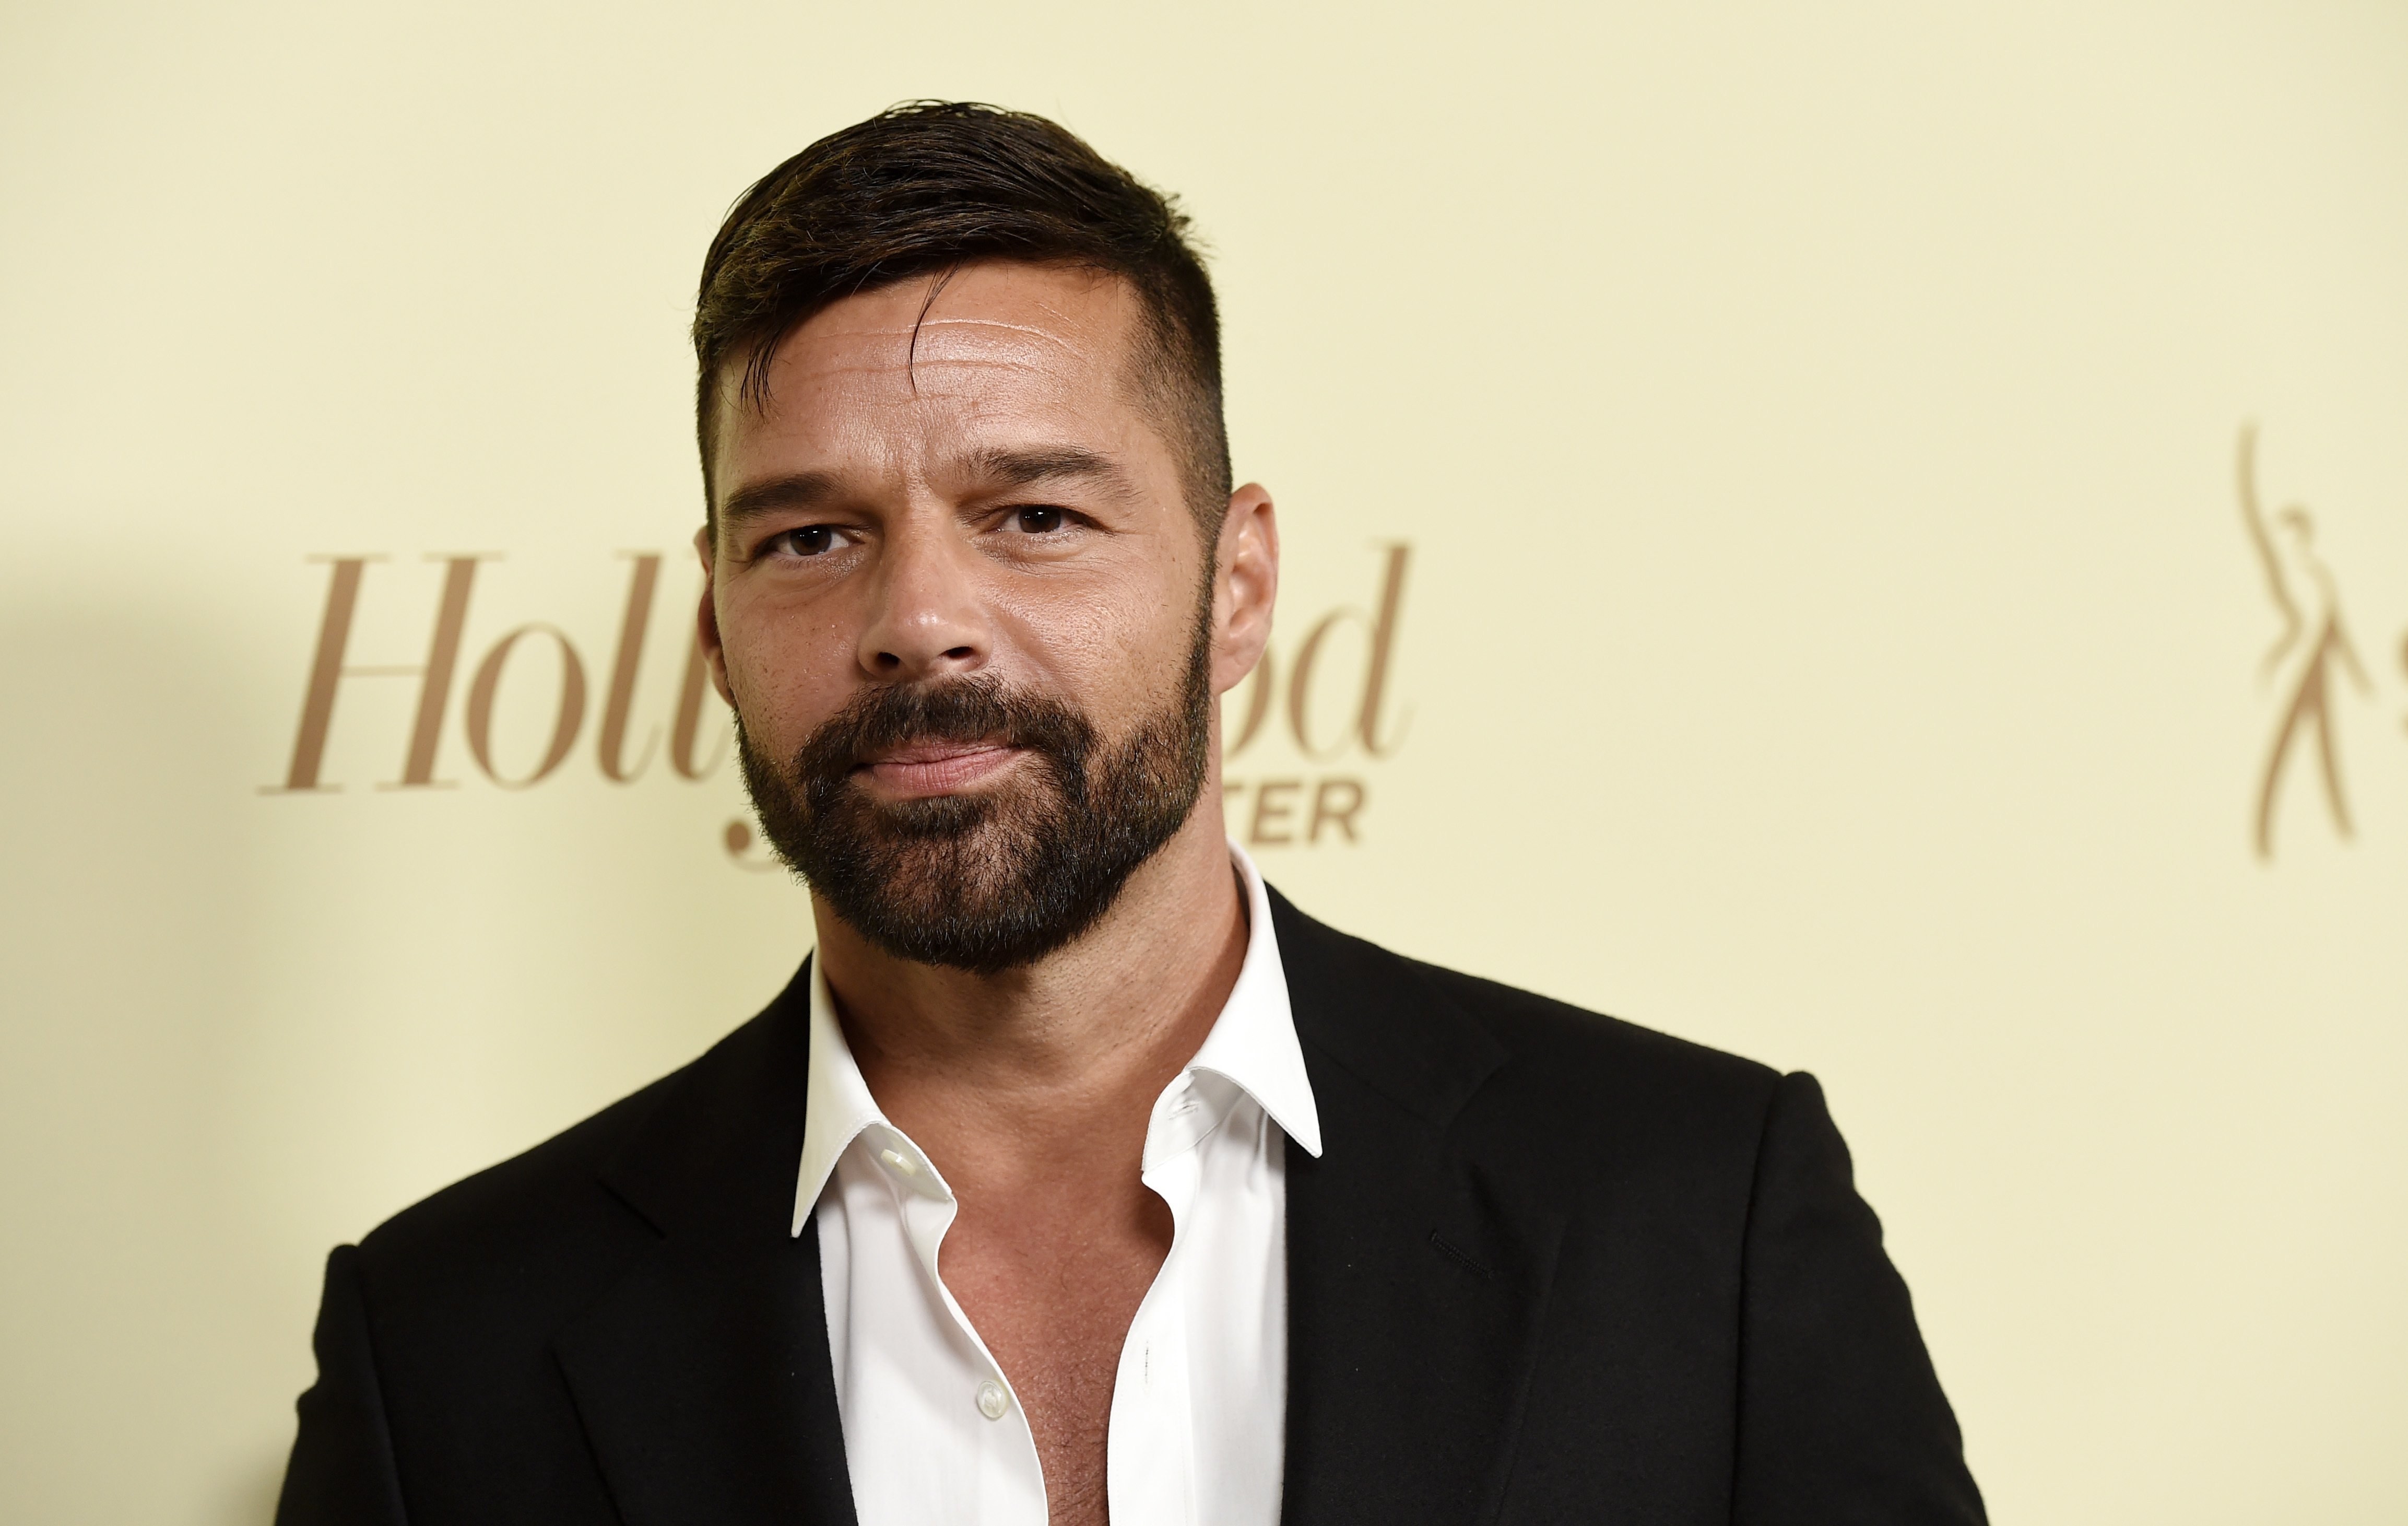 Ricky Martin ya no es guapo: se decolora la barba y ahora es blanca. Queda raro